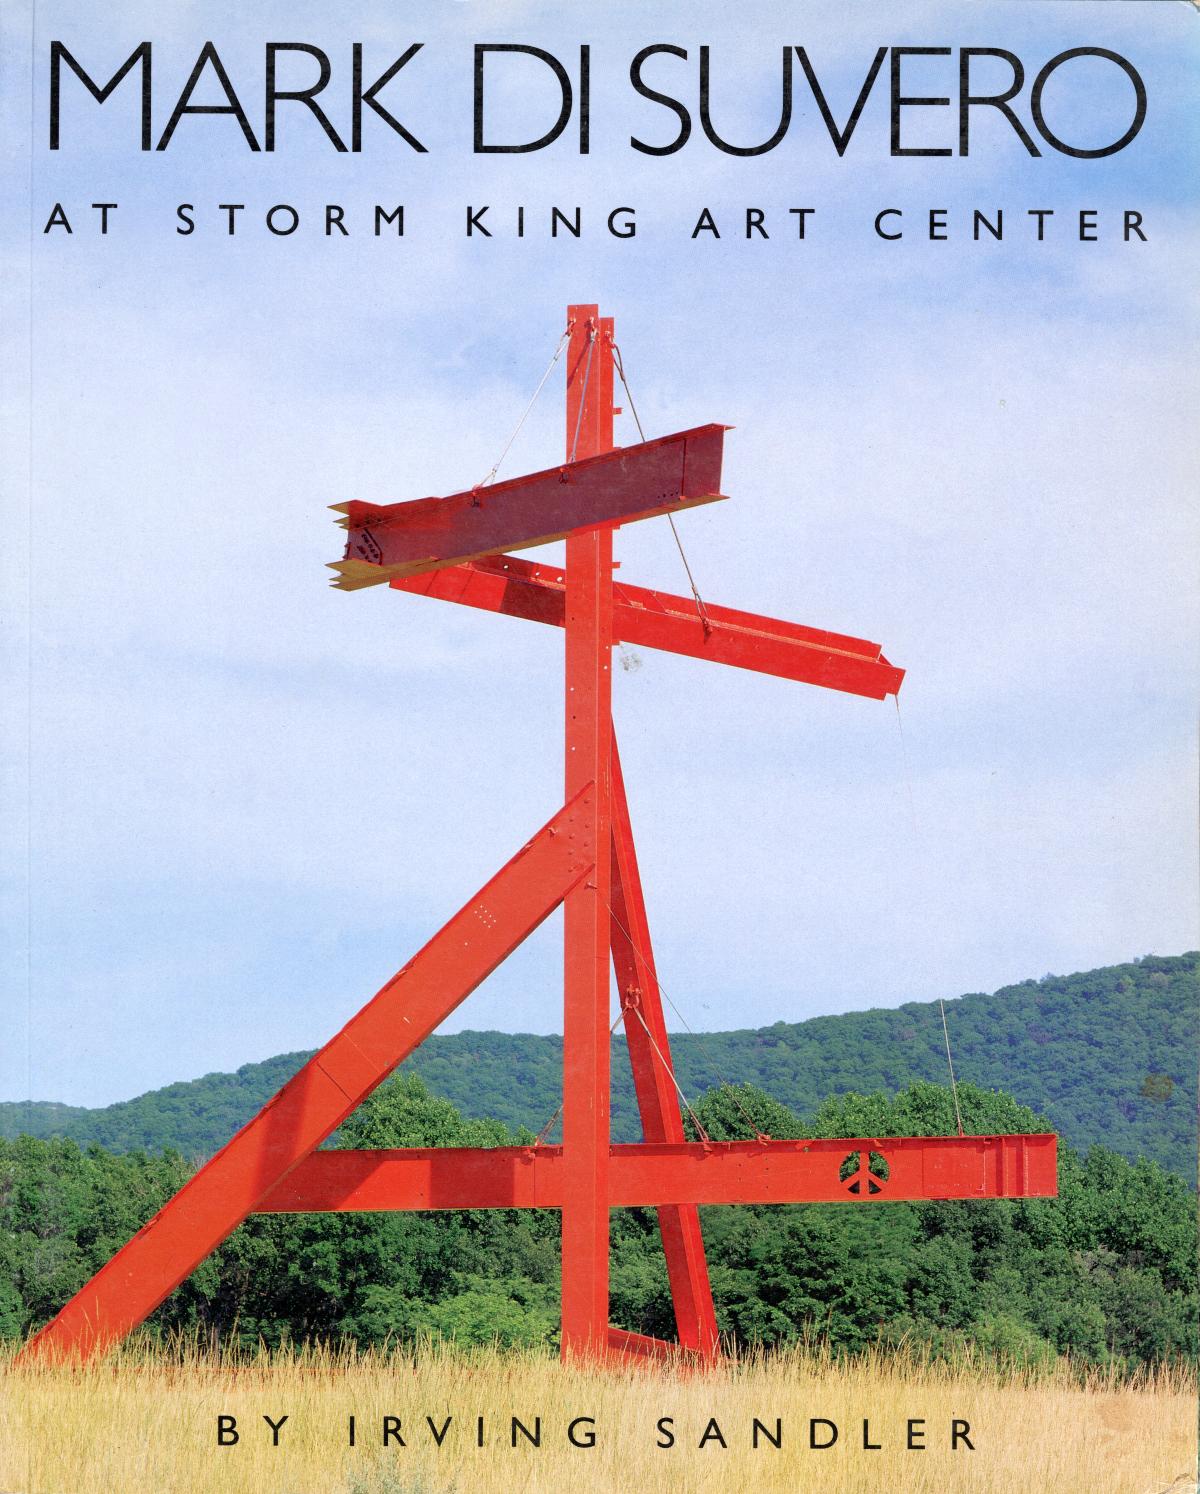 Mark di Suvero at Storm King Art Center, May 13 – November 15, 1995, April 1 – November 15, 1996, exhibition catalogue